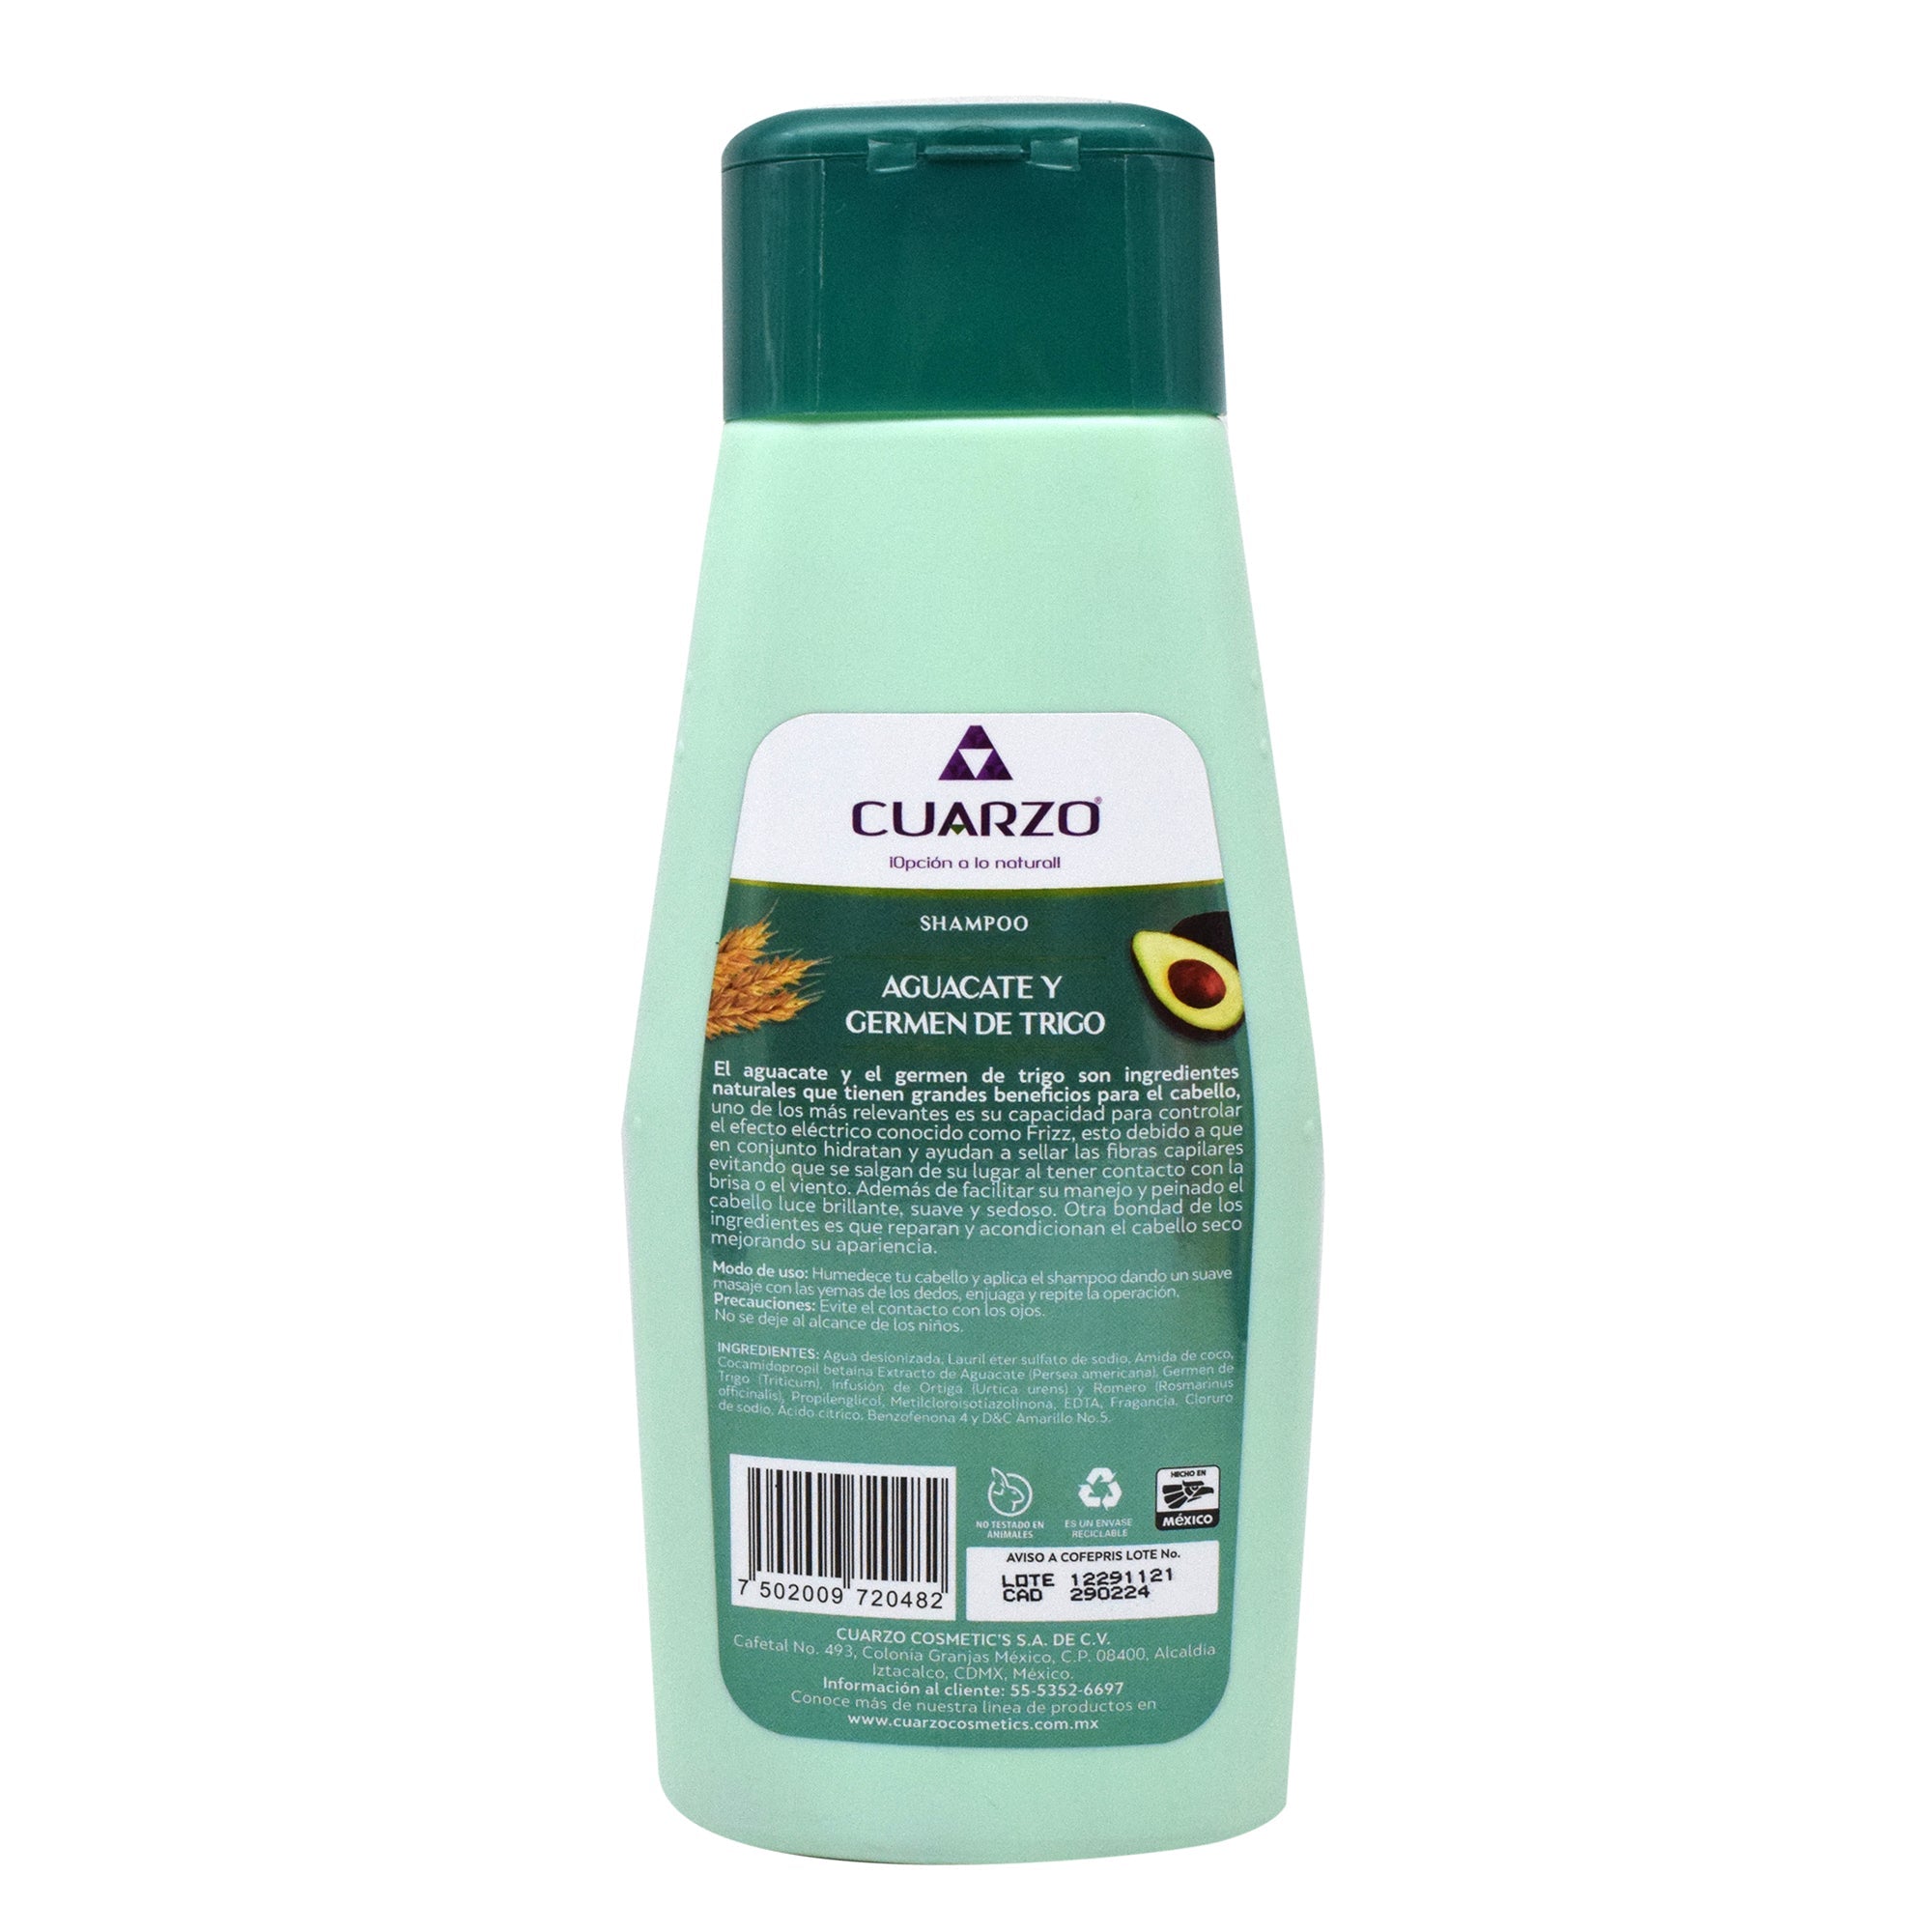 Shampoo aguacate y germen de trigo 550 ml